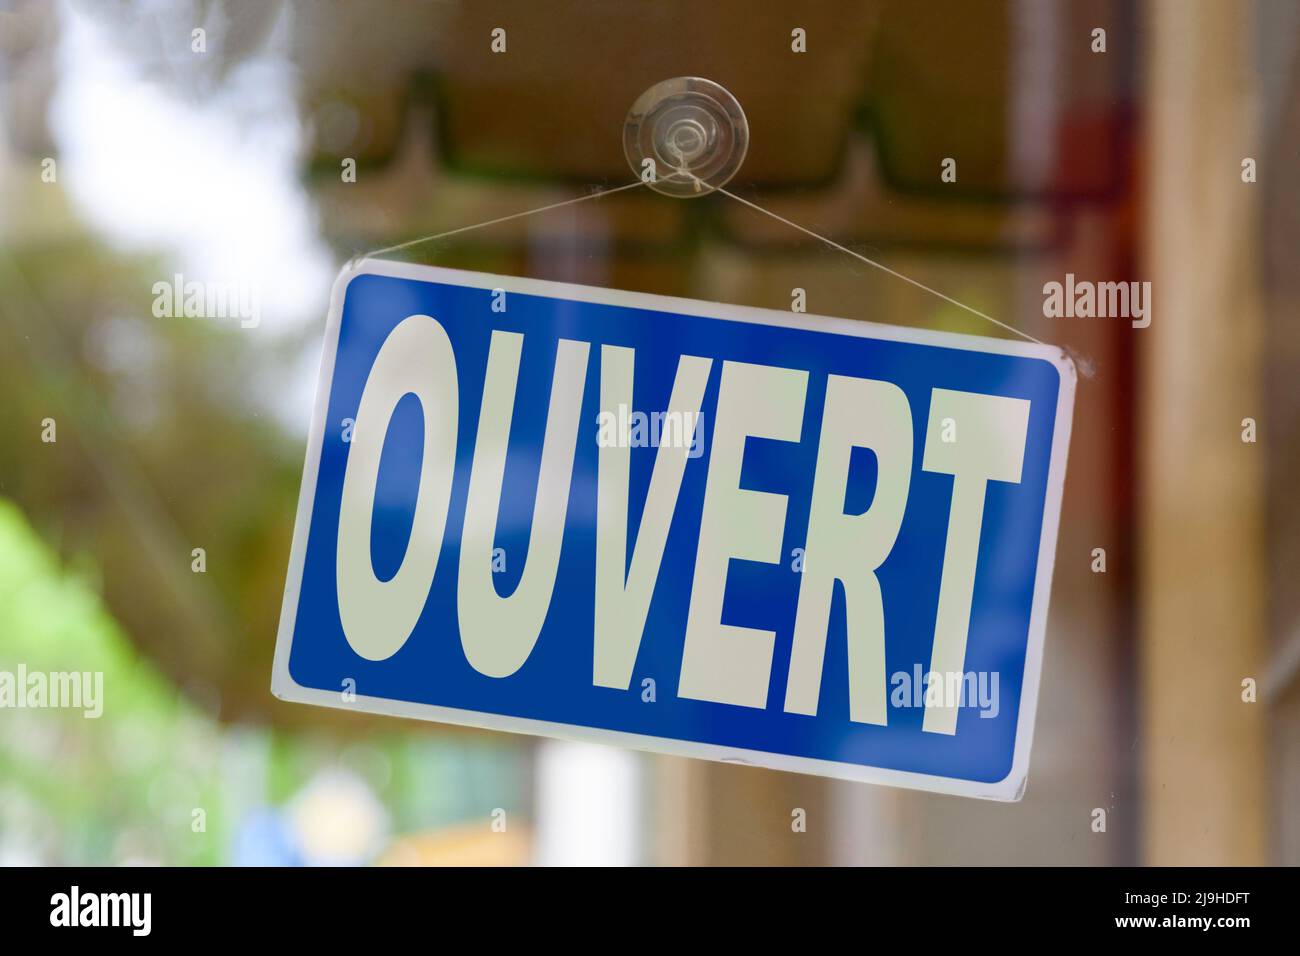 Primo piano su un segno blu nella finestra di un negozio che visualizza il messaggio in francese - Ouvert - significato in inglese - aperto -. Foto Stock